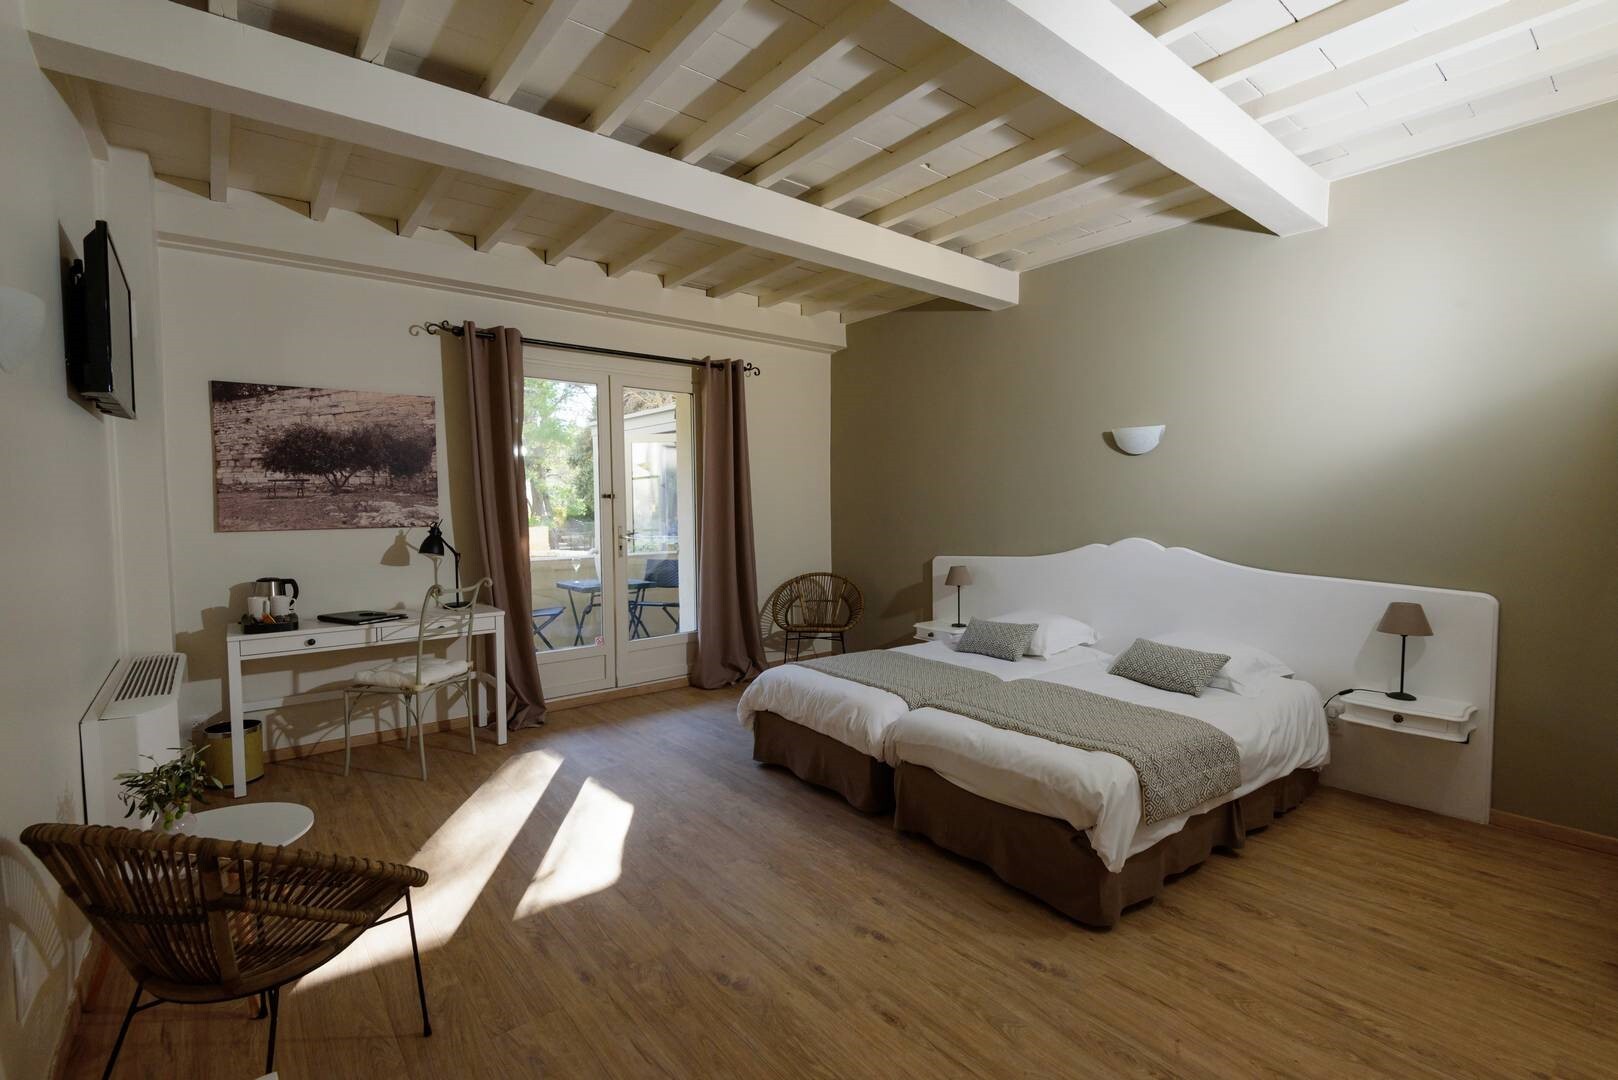 Chambre spacieuse aux tons beige, hôtel de charme Arles, Le Belesso